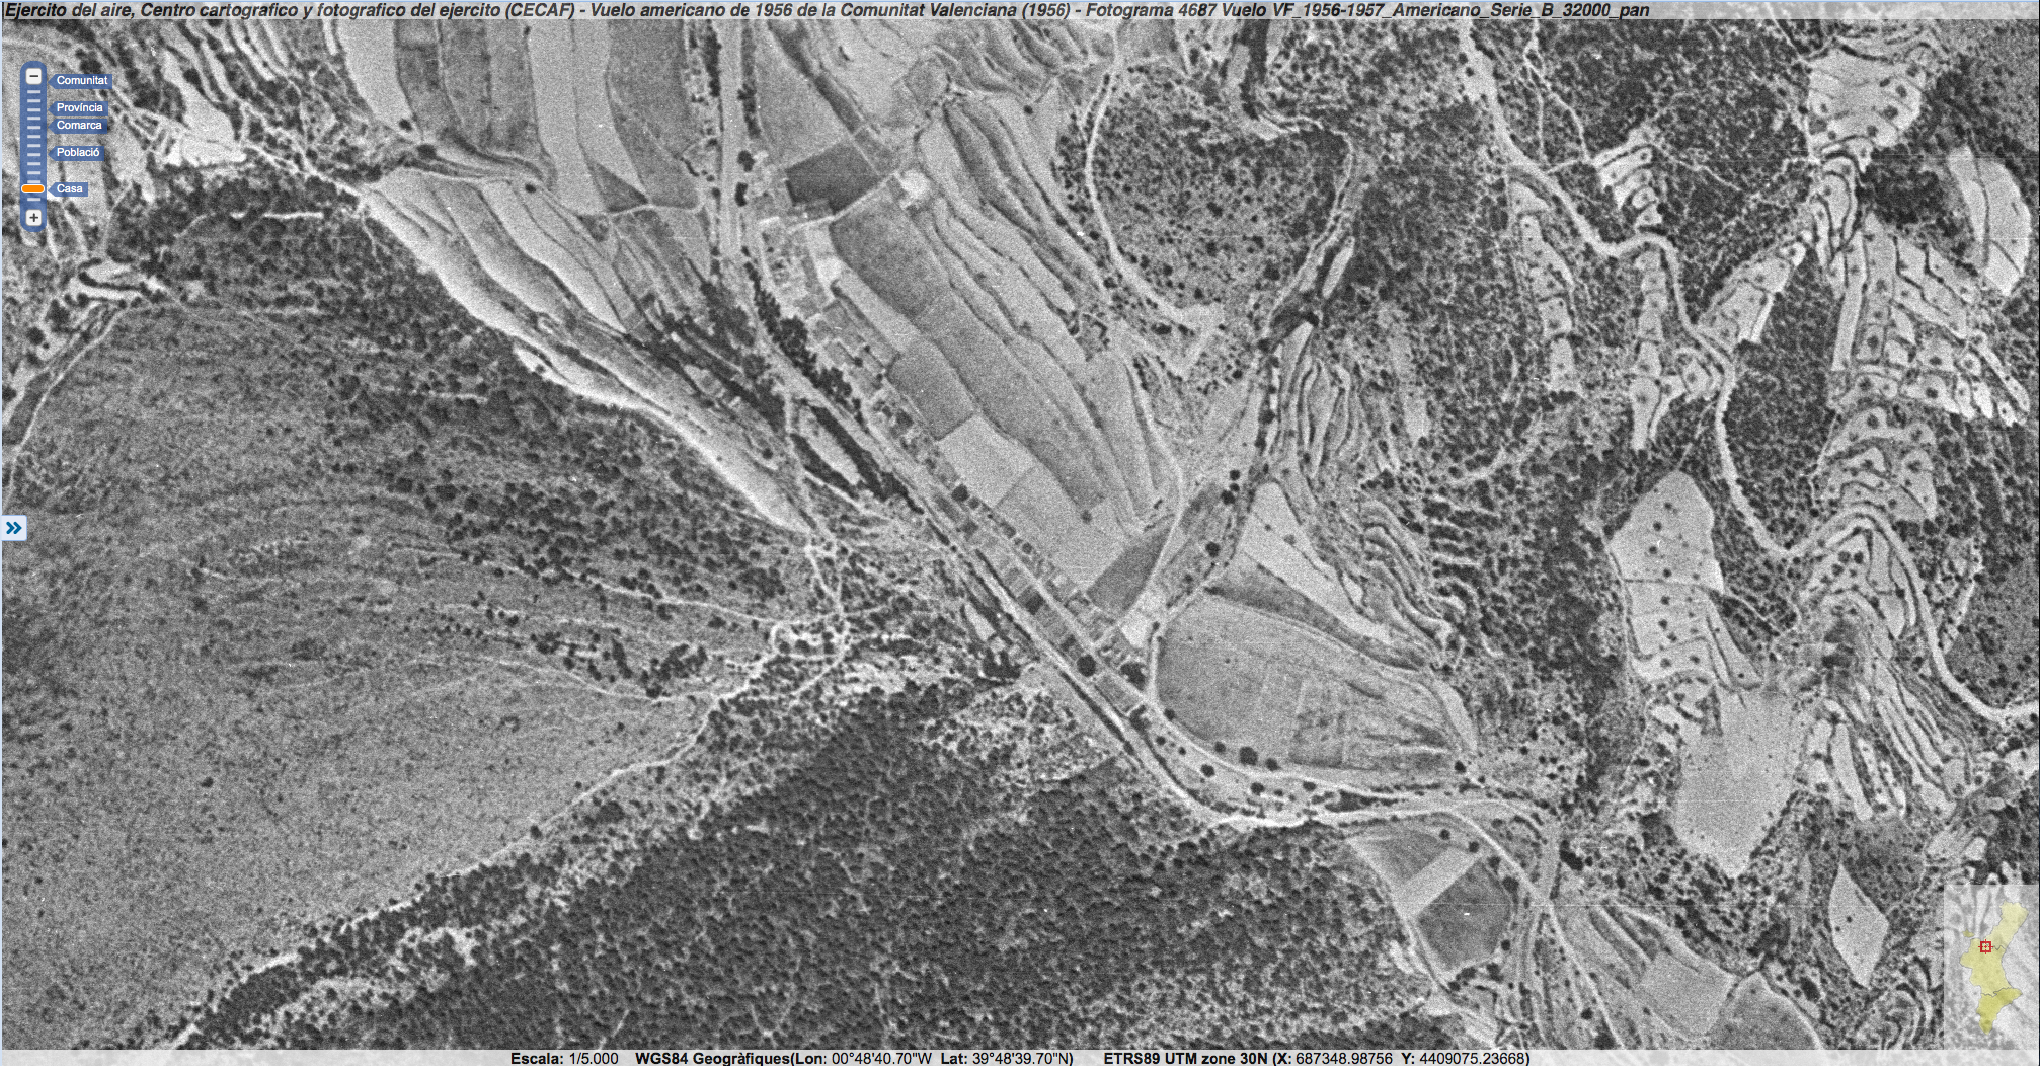 detalle Foto aerea 1956